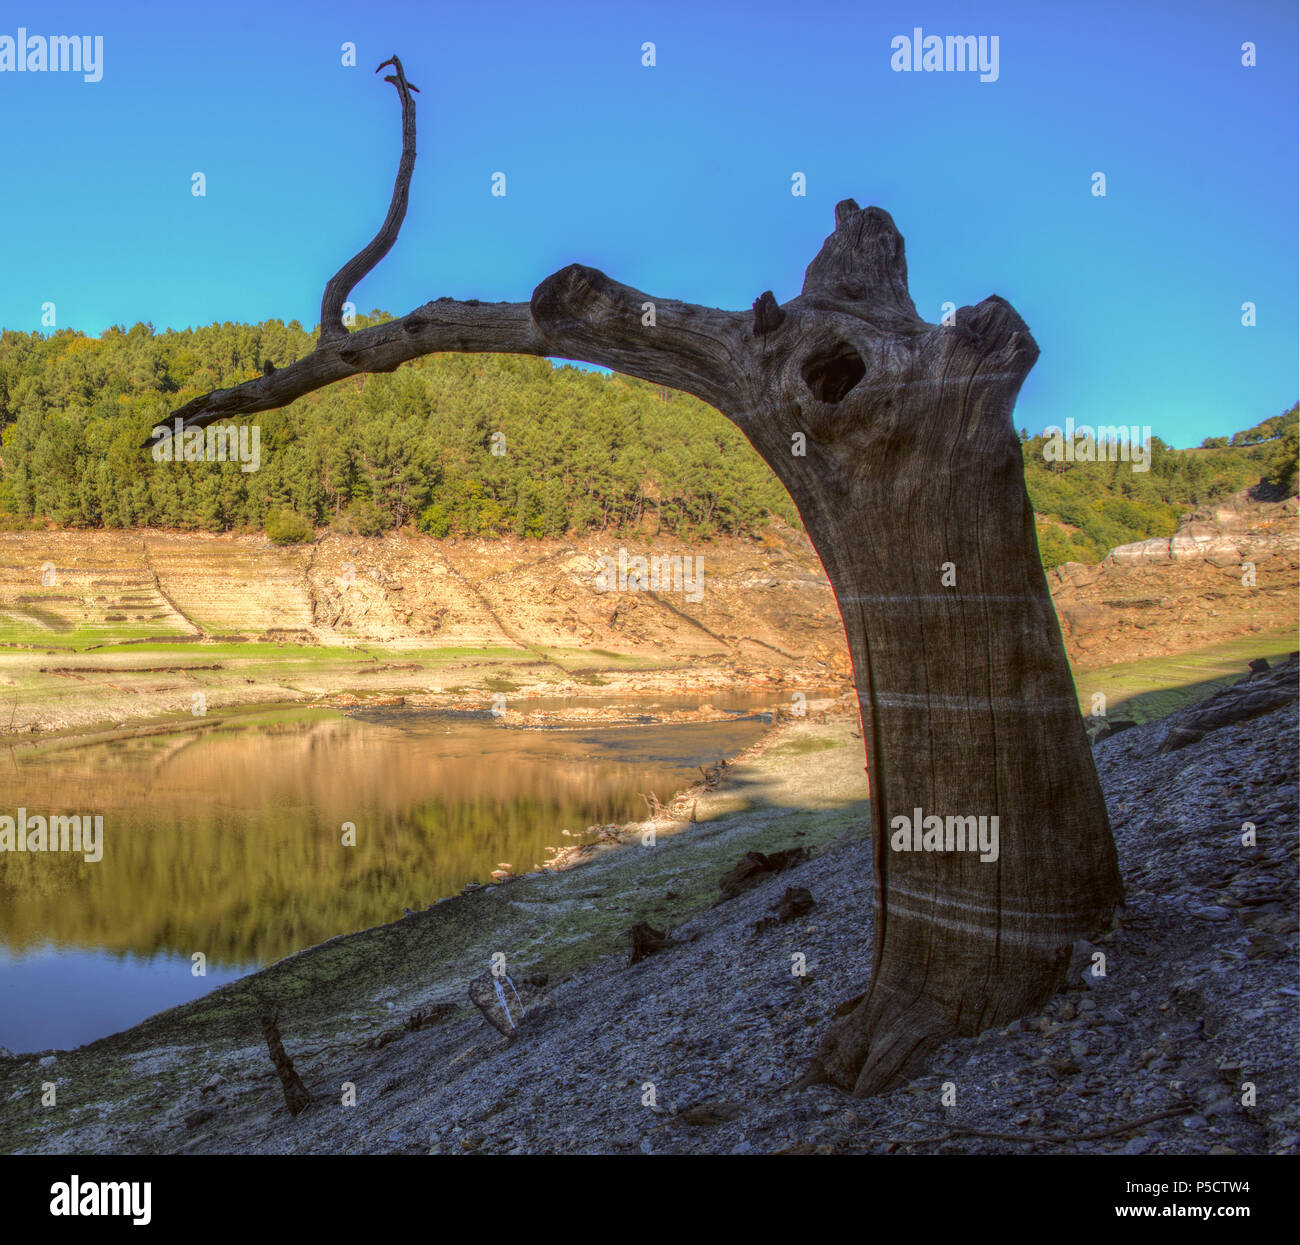 El árbol pájaro, a la orilla del río miño en Portomarín Stock Photo